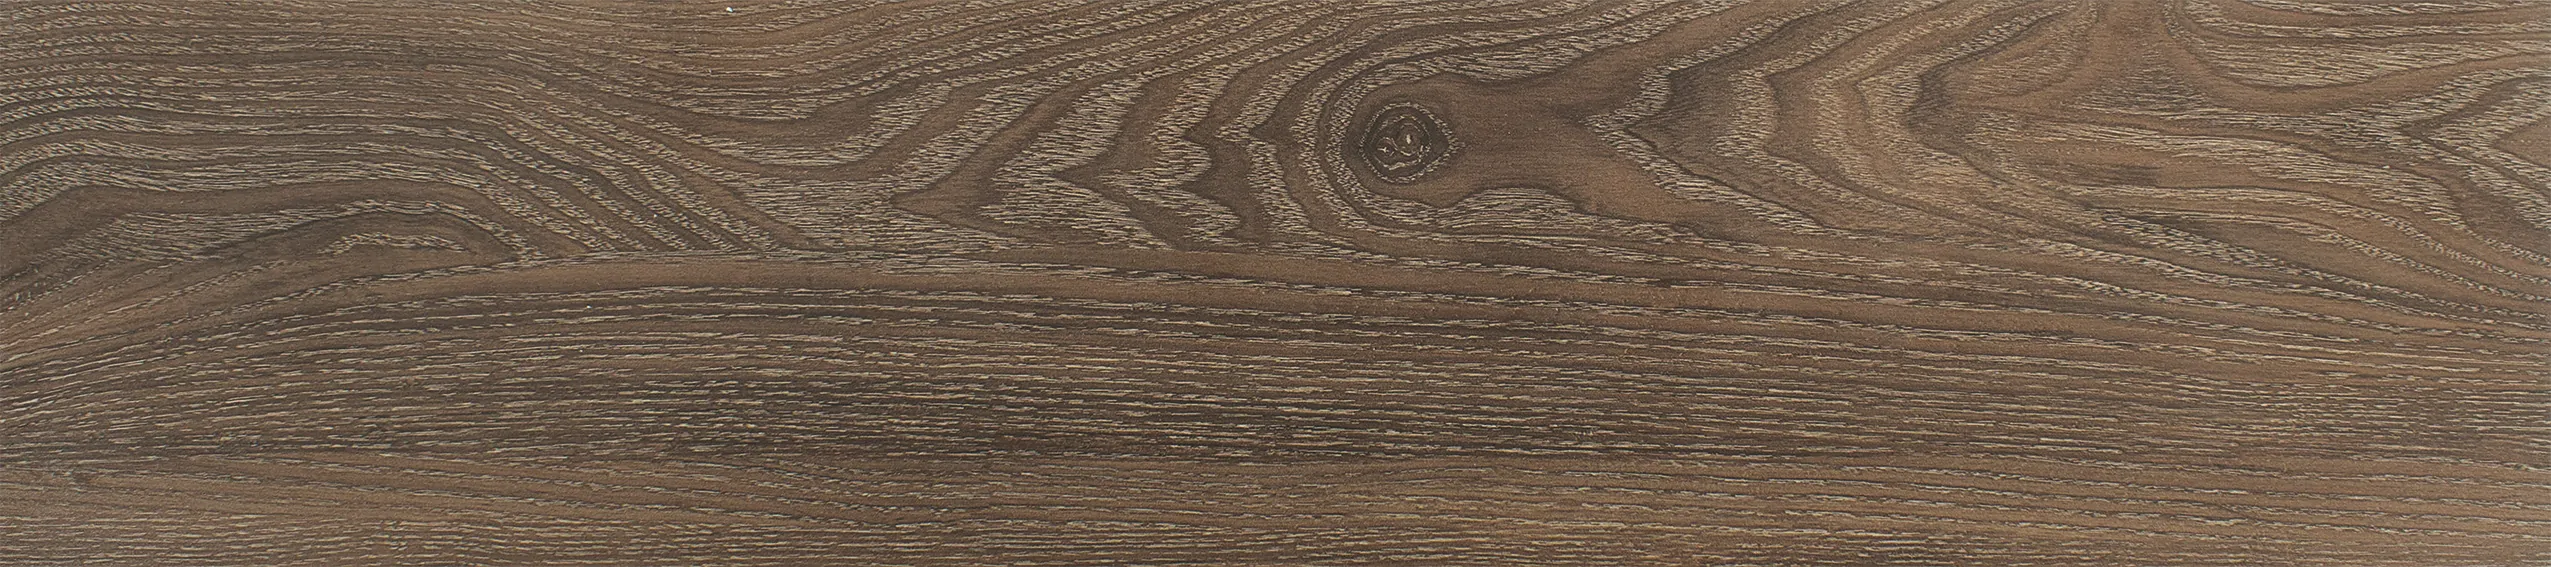 Wooden floor tiles 15 * 80